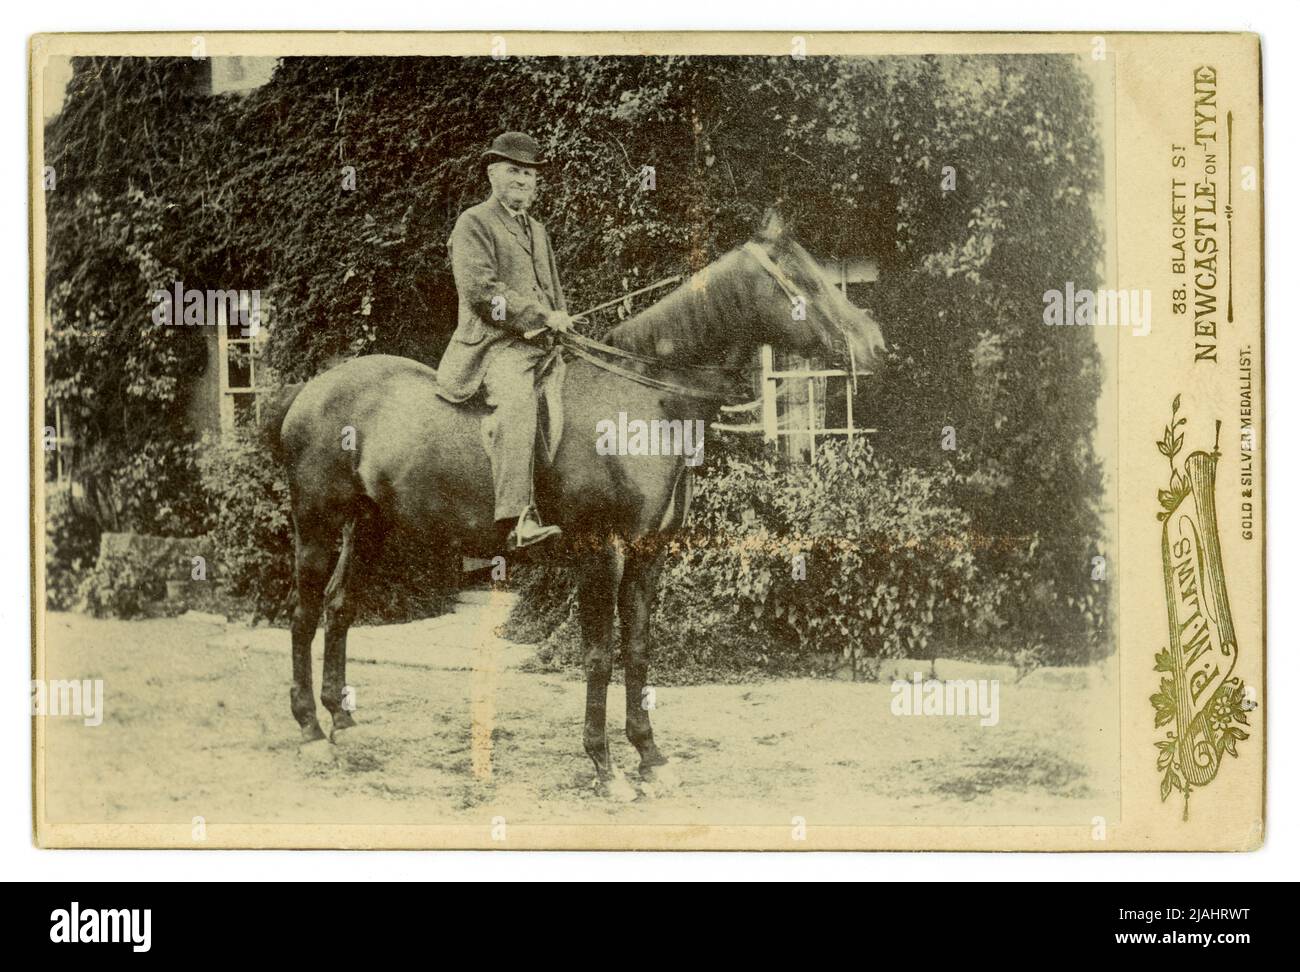 Original tarjeta de gabinete encantadora al aire libre retrato de un caballero de campo en su caballo fuera de su casa, fotografiado por P.M. Laws, 38 Blackett St. Newcastle-upon-Tyne, Inglaterra, Reino Unido a finales de 1880's, principios de 1890's. Foto de stock